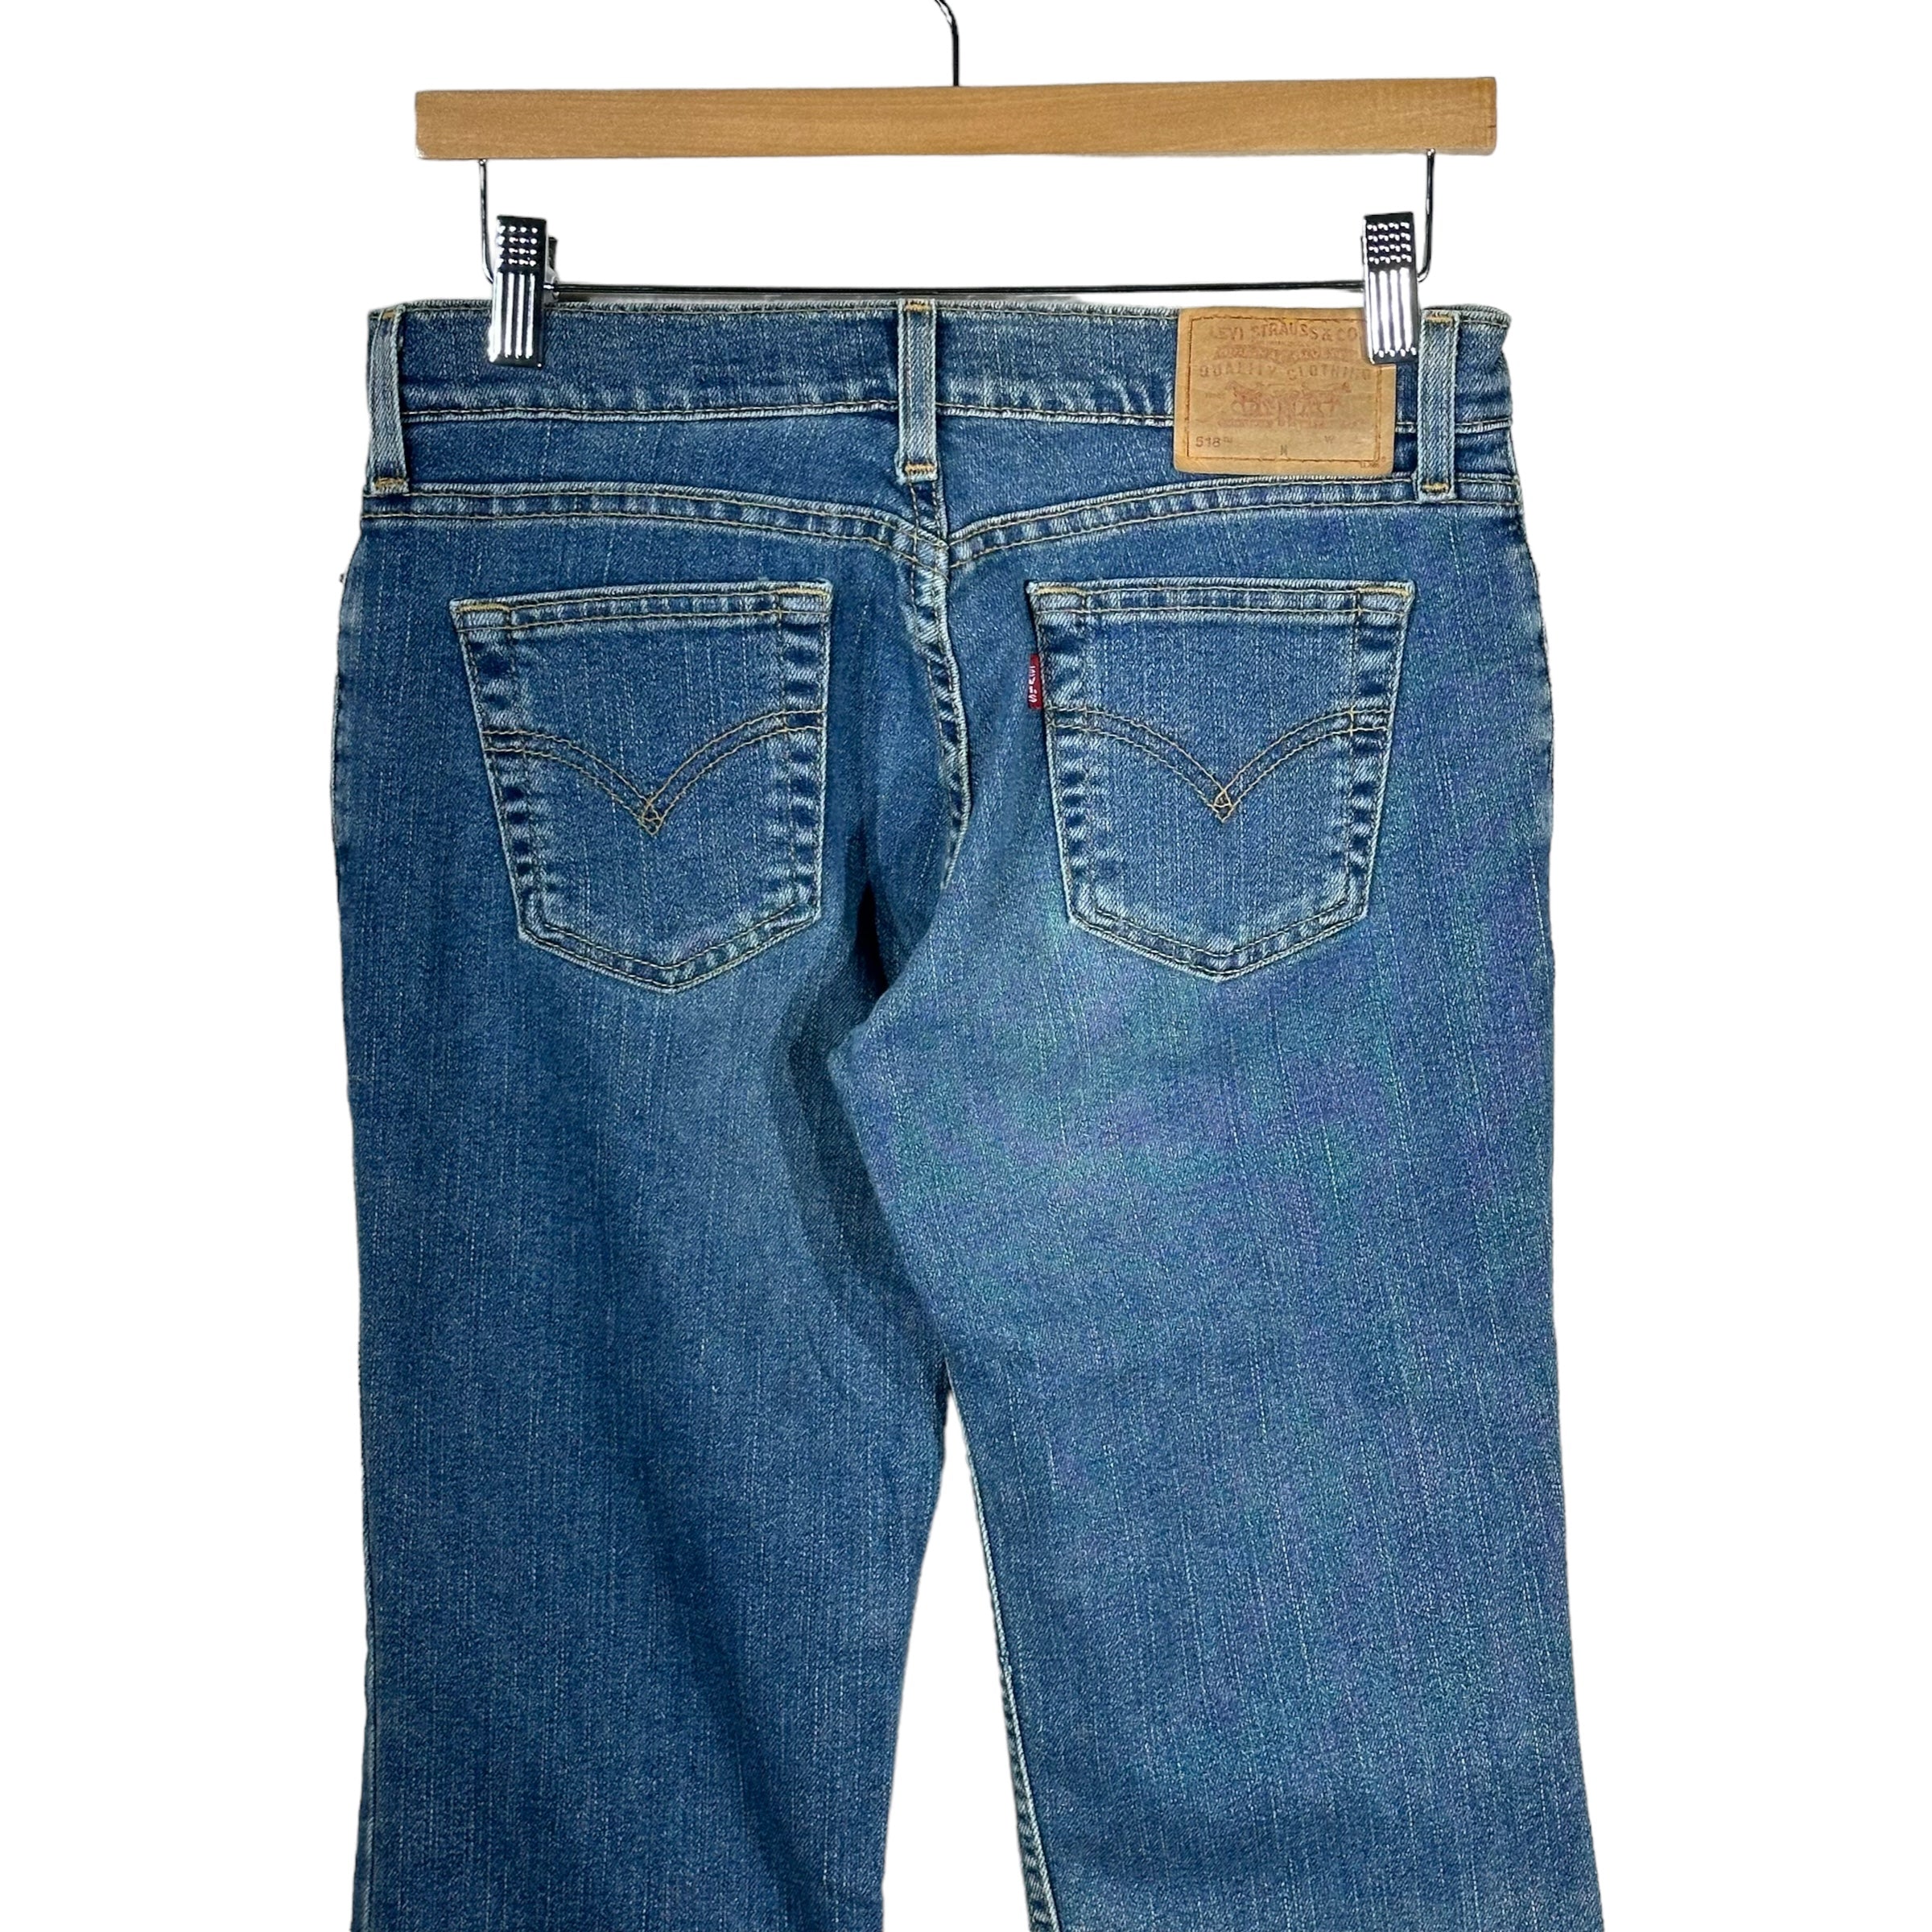 Vintage Levi's 518 Jeans